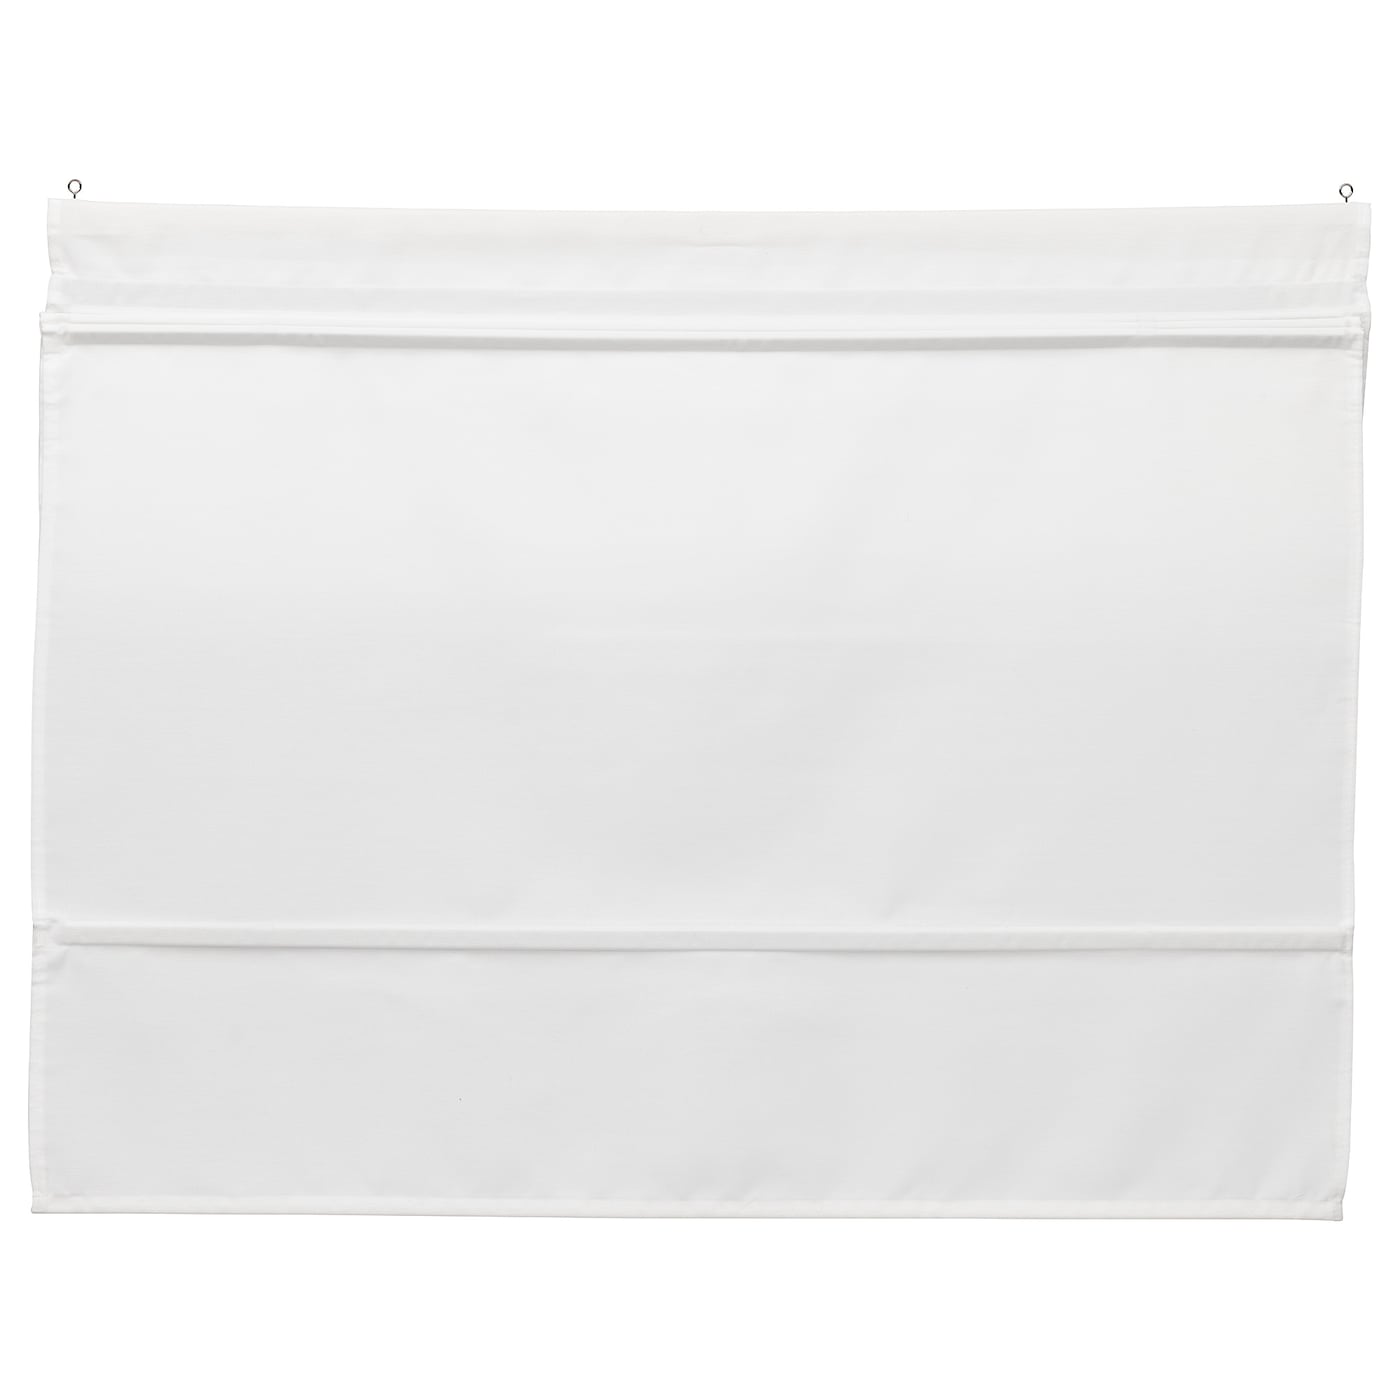 Римская штора - IKEA RINGBLOMMA, 160х120 см, белый, РИНГБЛУММА ИКЕА